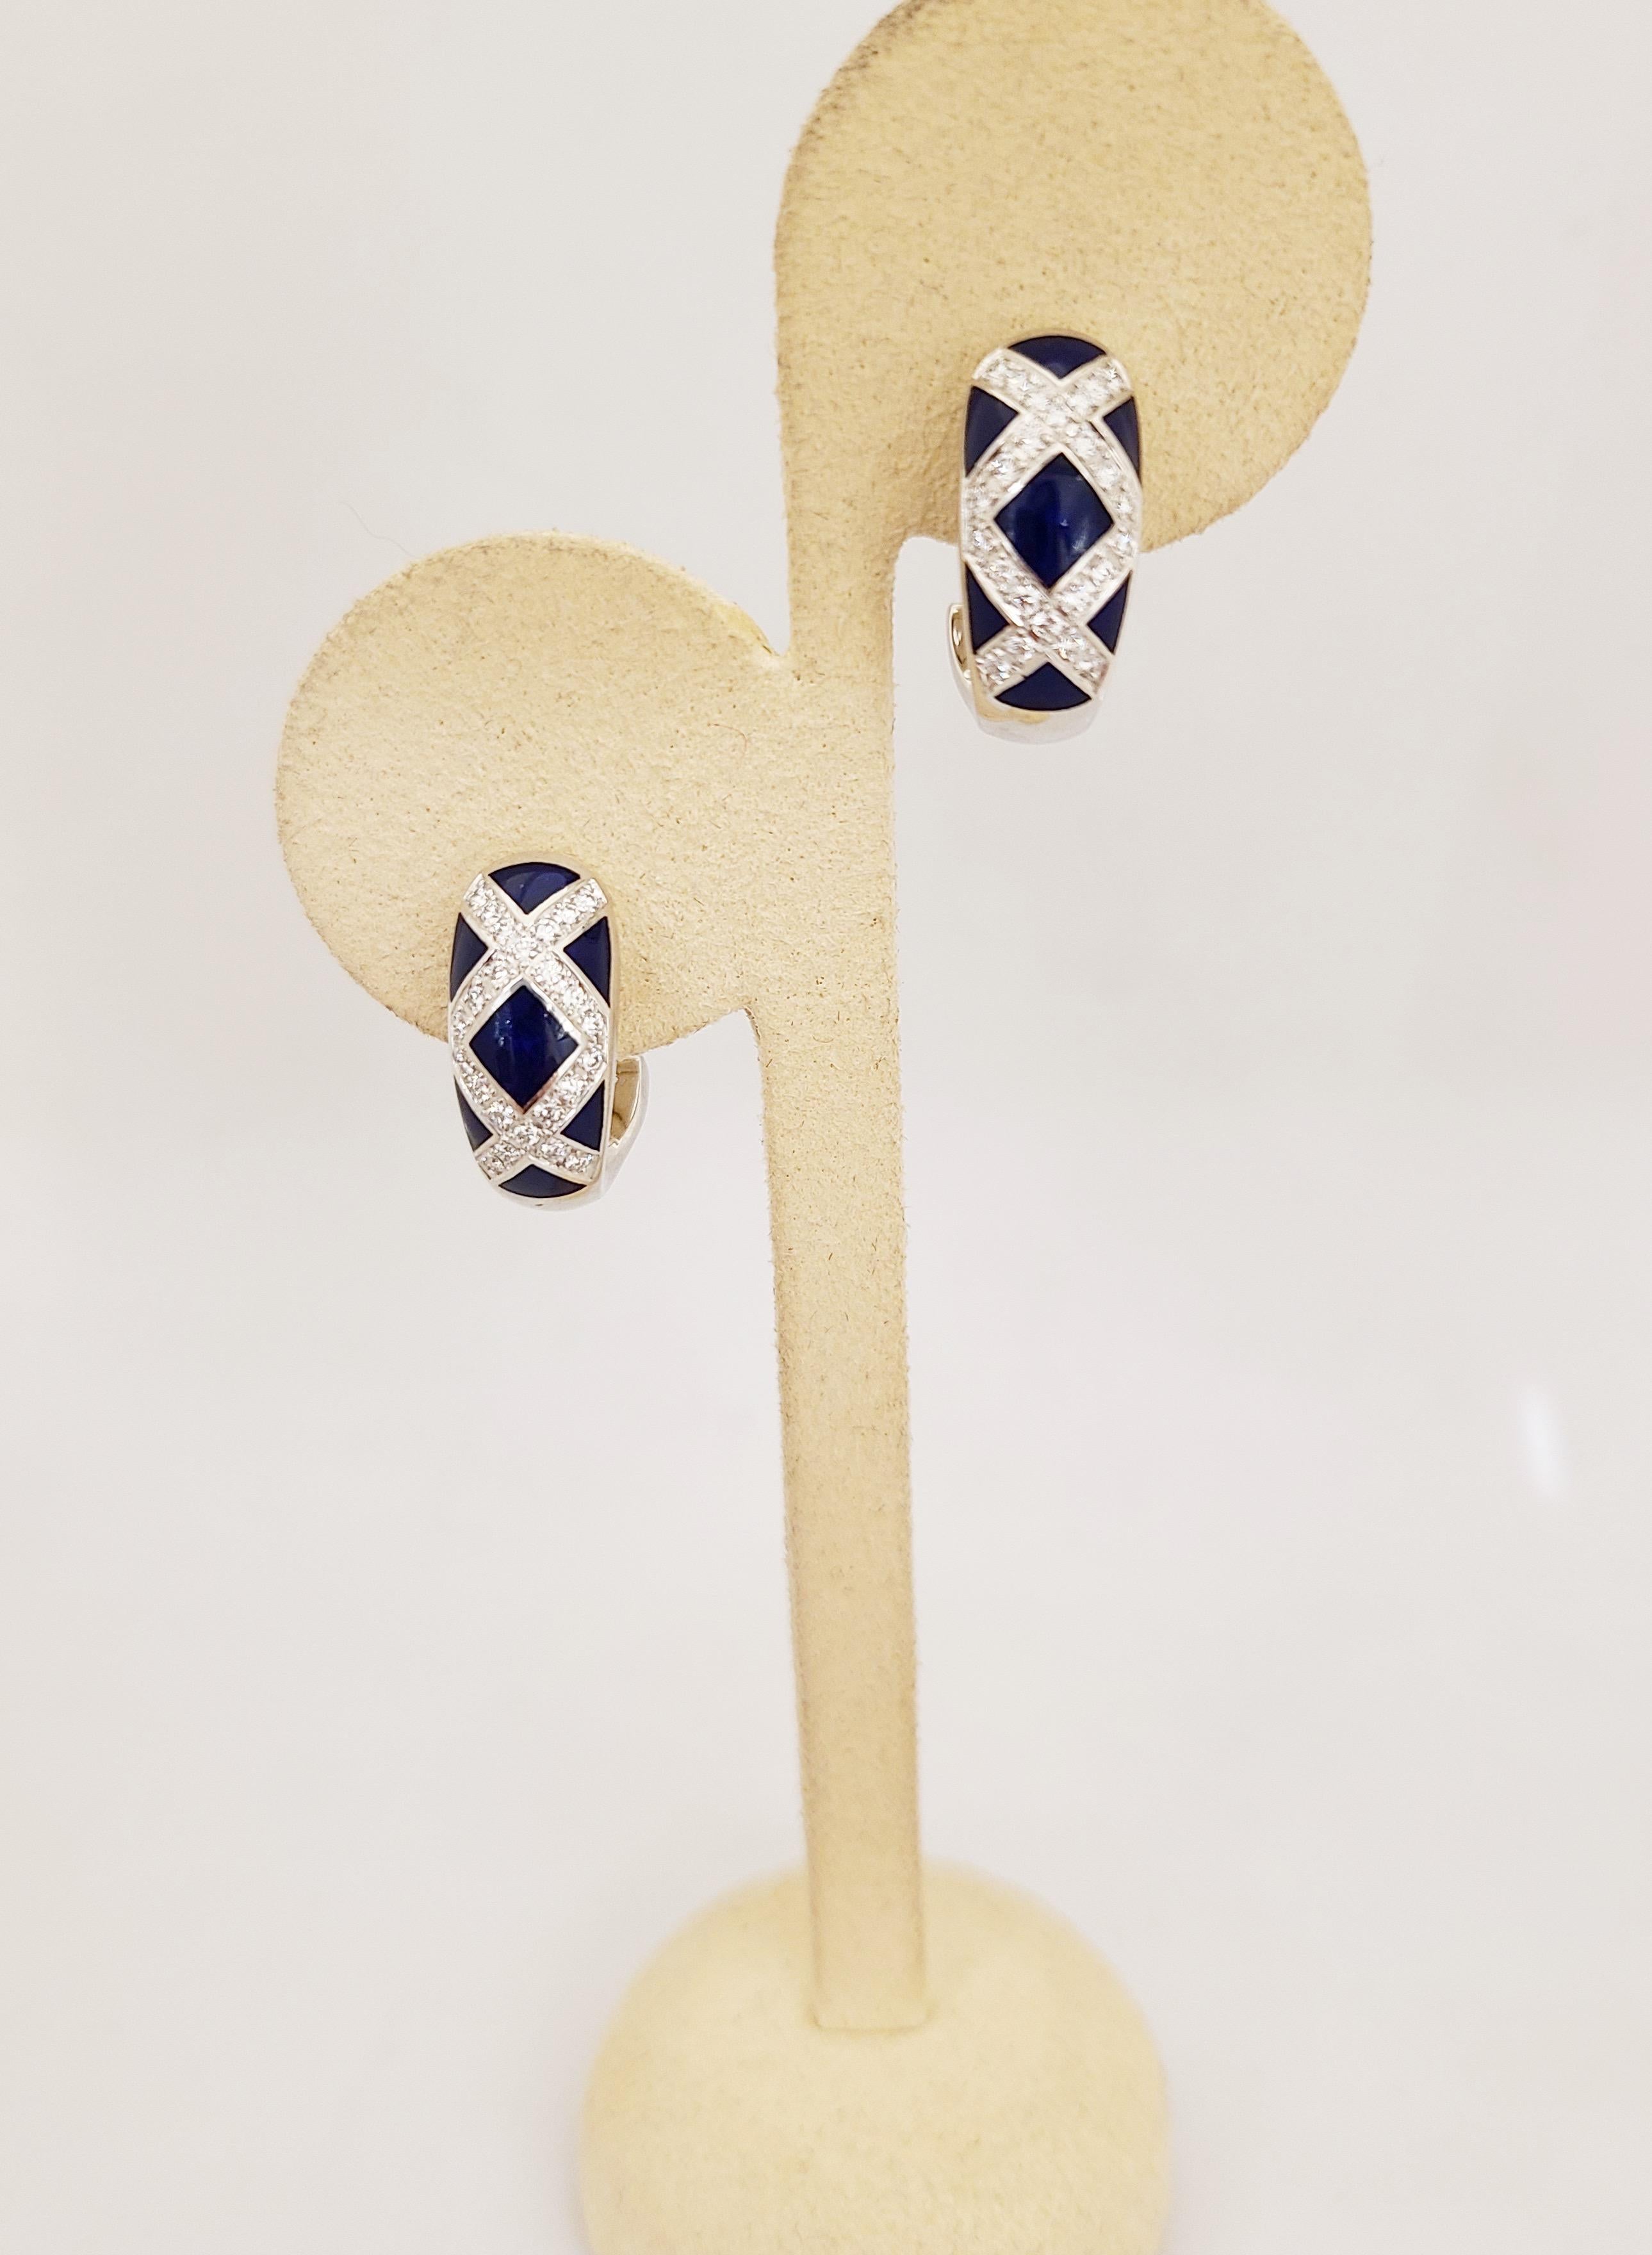 Diese atemberaubenden modernen Ohrringe aus 18 Karat Weißgold, Diamanten und blauer Emaille wurden von Victor Mayer für Faberge entworfen. Diese Ohrringe werden in der Tradition des Hauses Faberge mit viel Liebe zum Detail gefertigt und sind